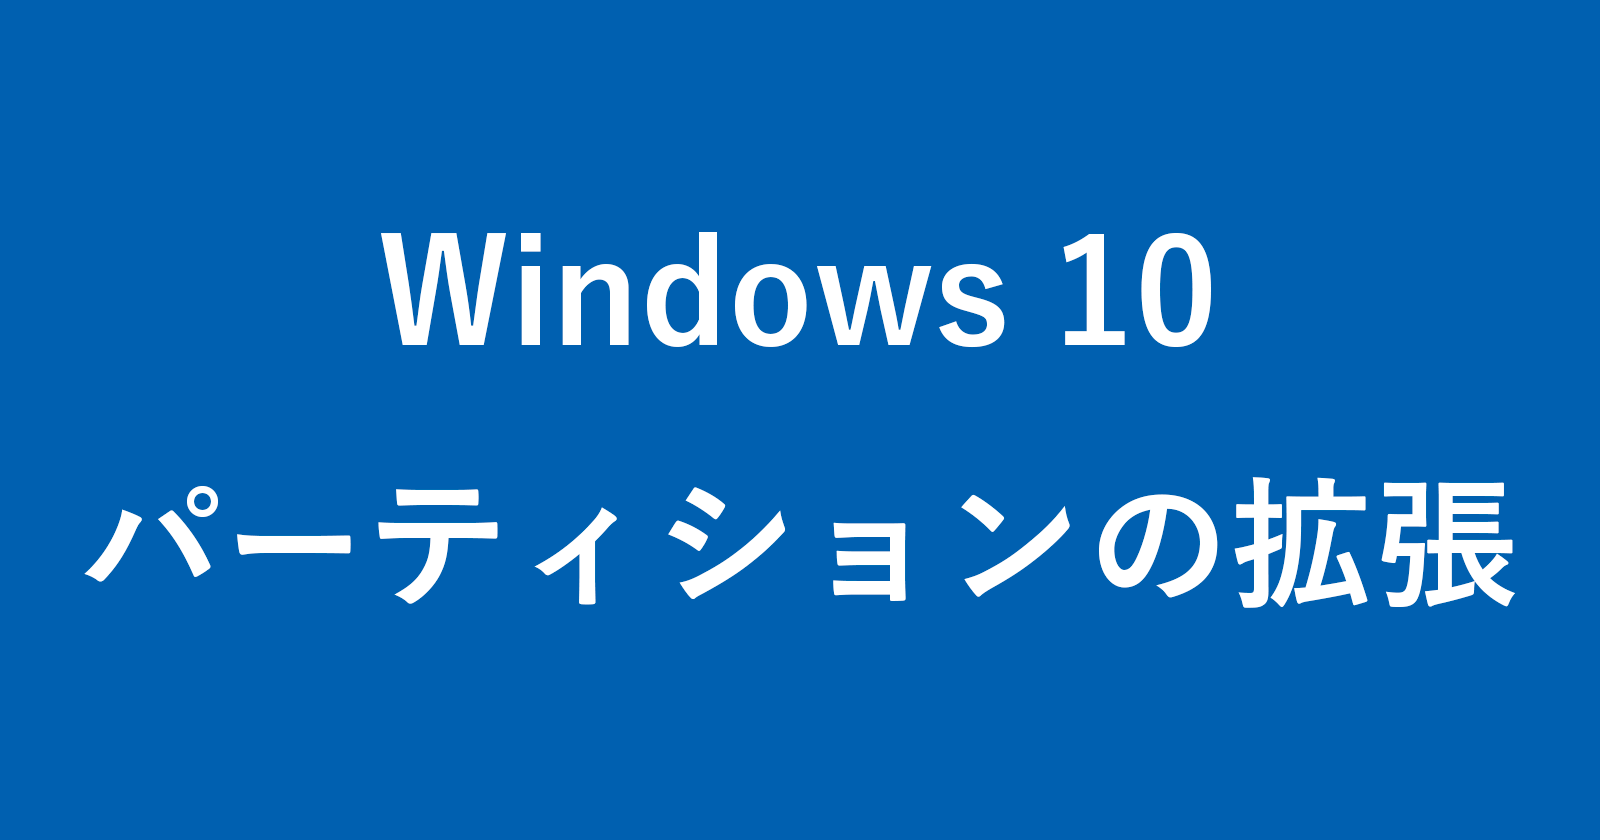 windows 10 expand partition